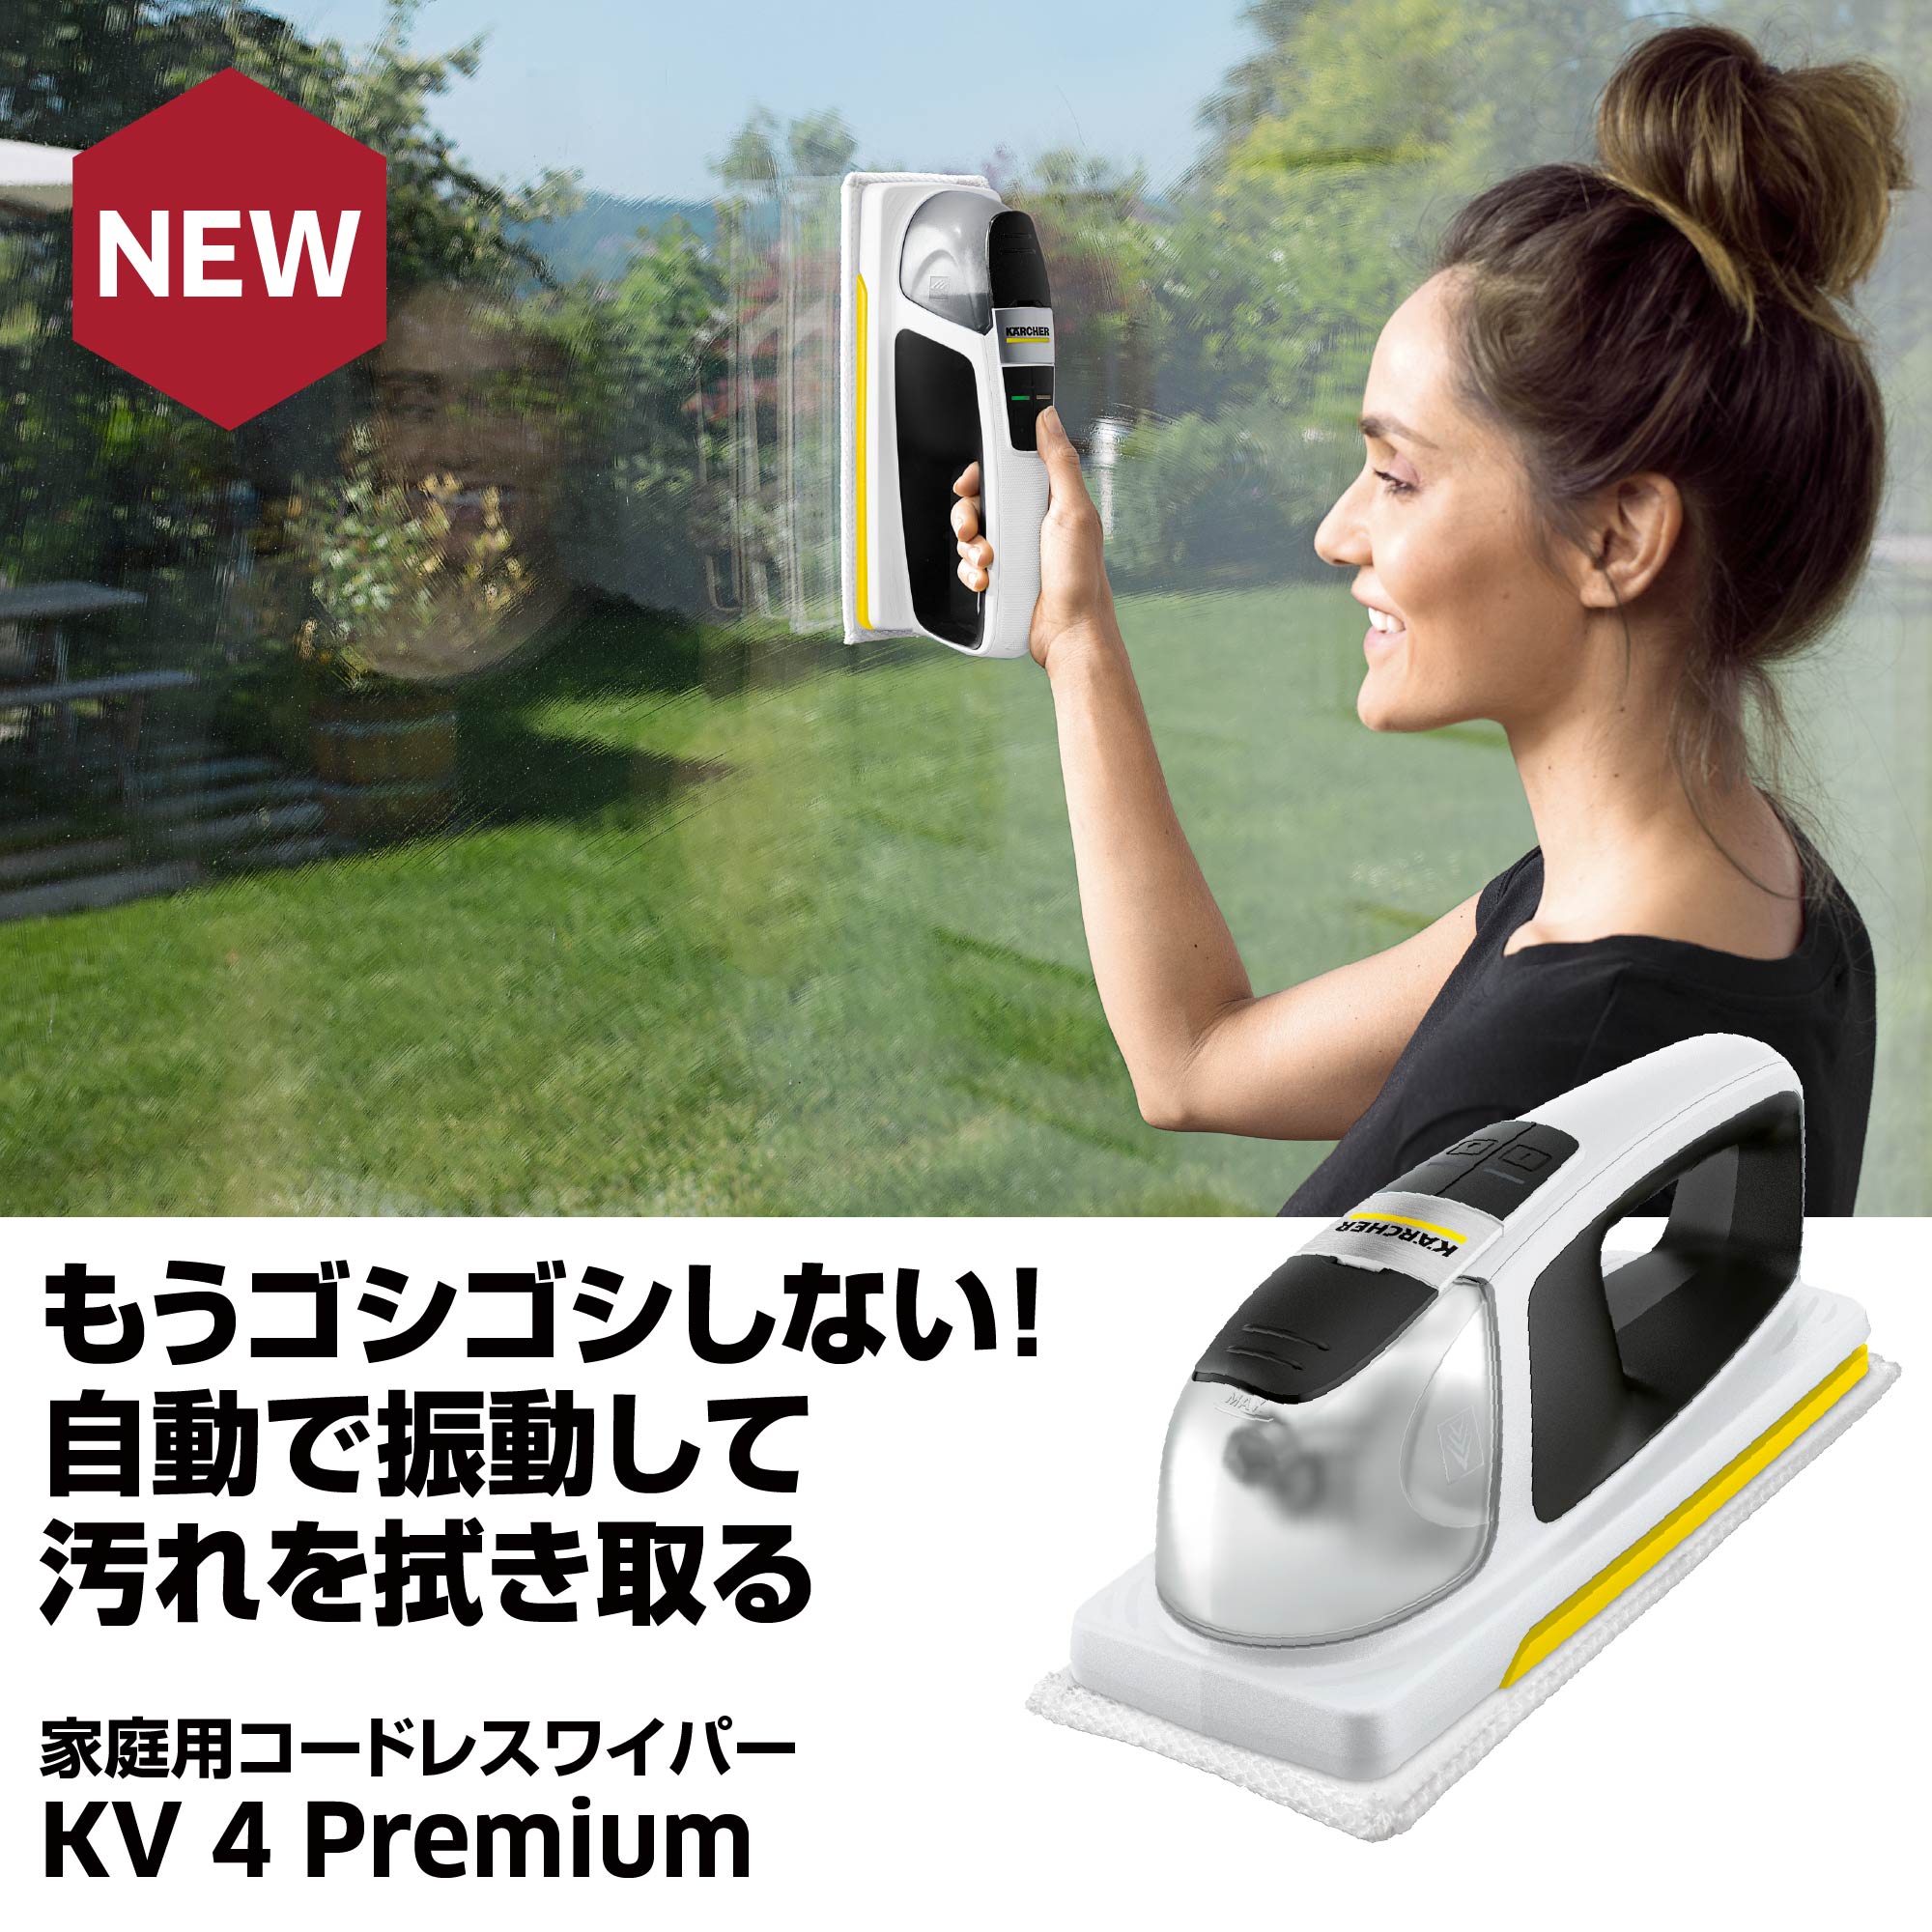 もうゴシゴシしない！自動で振動して汚れを拭き取る 家庭用コードレスワイパー KV 4 Premium